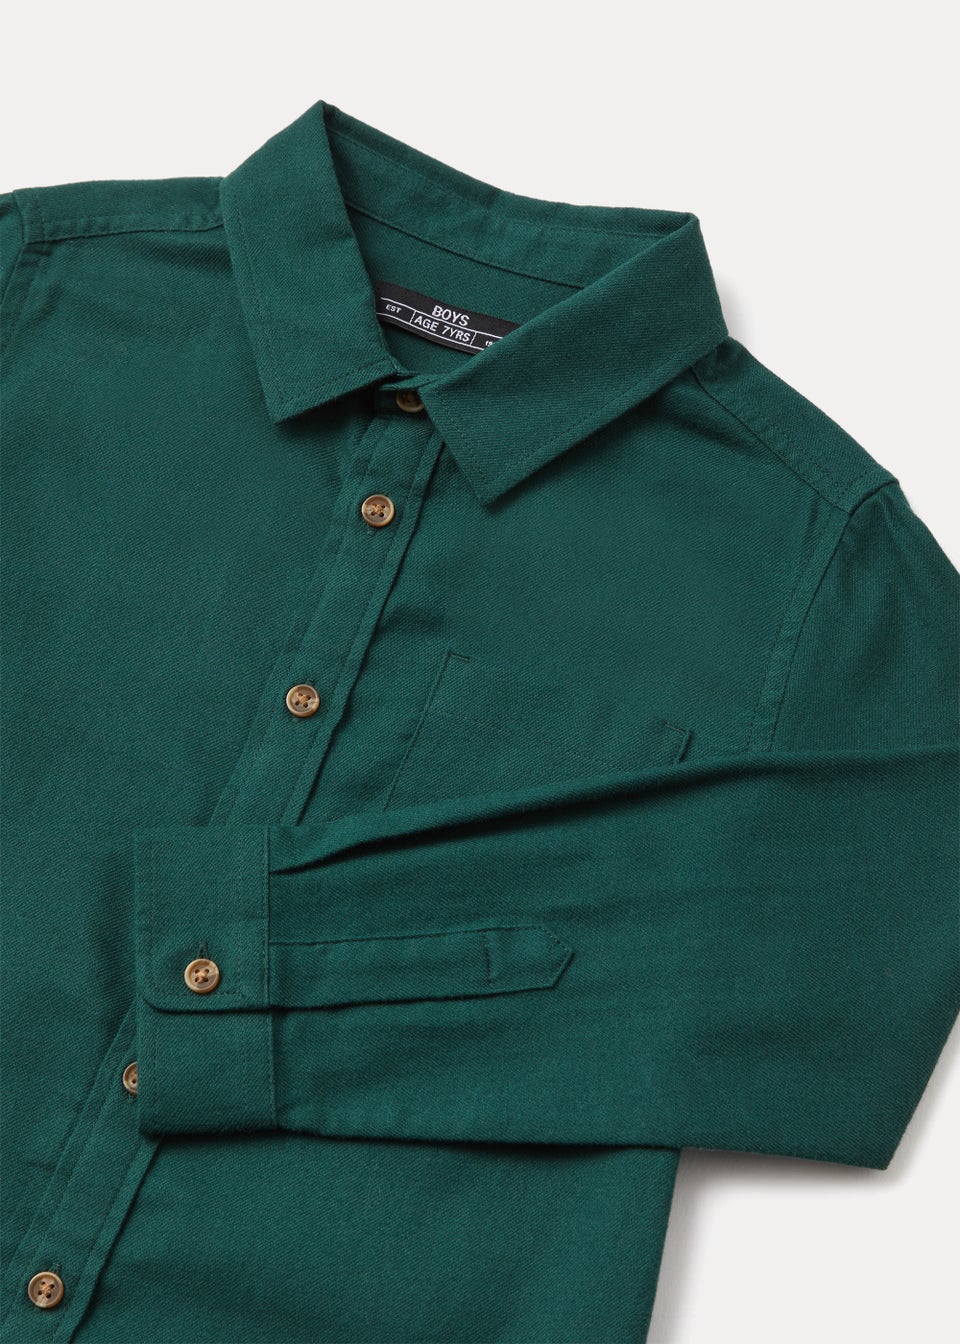 Boys Green Twill Shirt (4-13yrs)